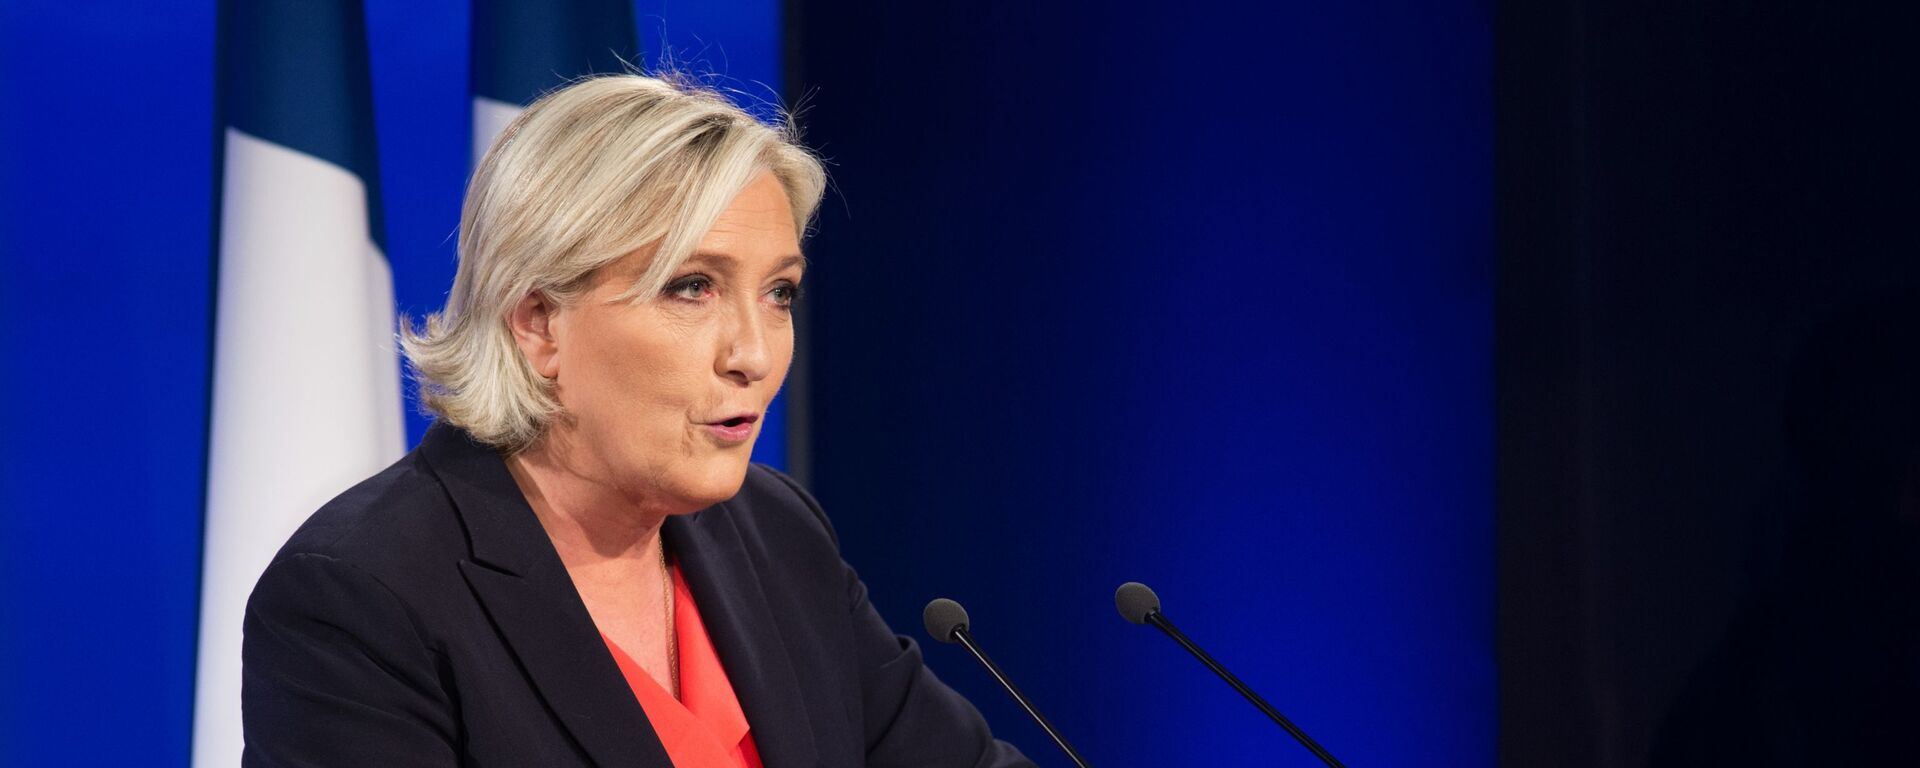 Marine Le Pen, política francesa, líder del partido Agrupación Nacional - Sputnik Mundo, 1920, 16.03.2020